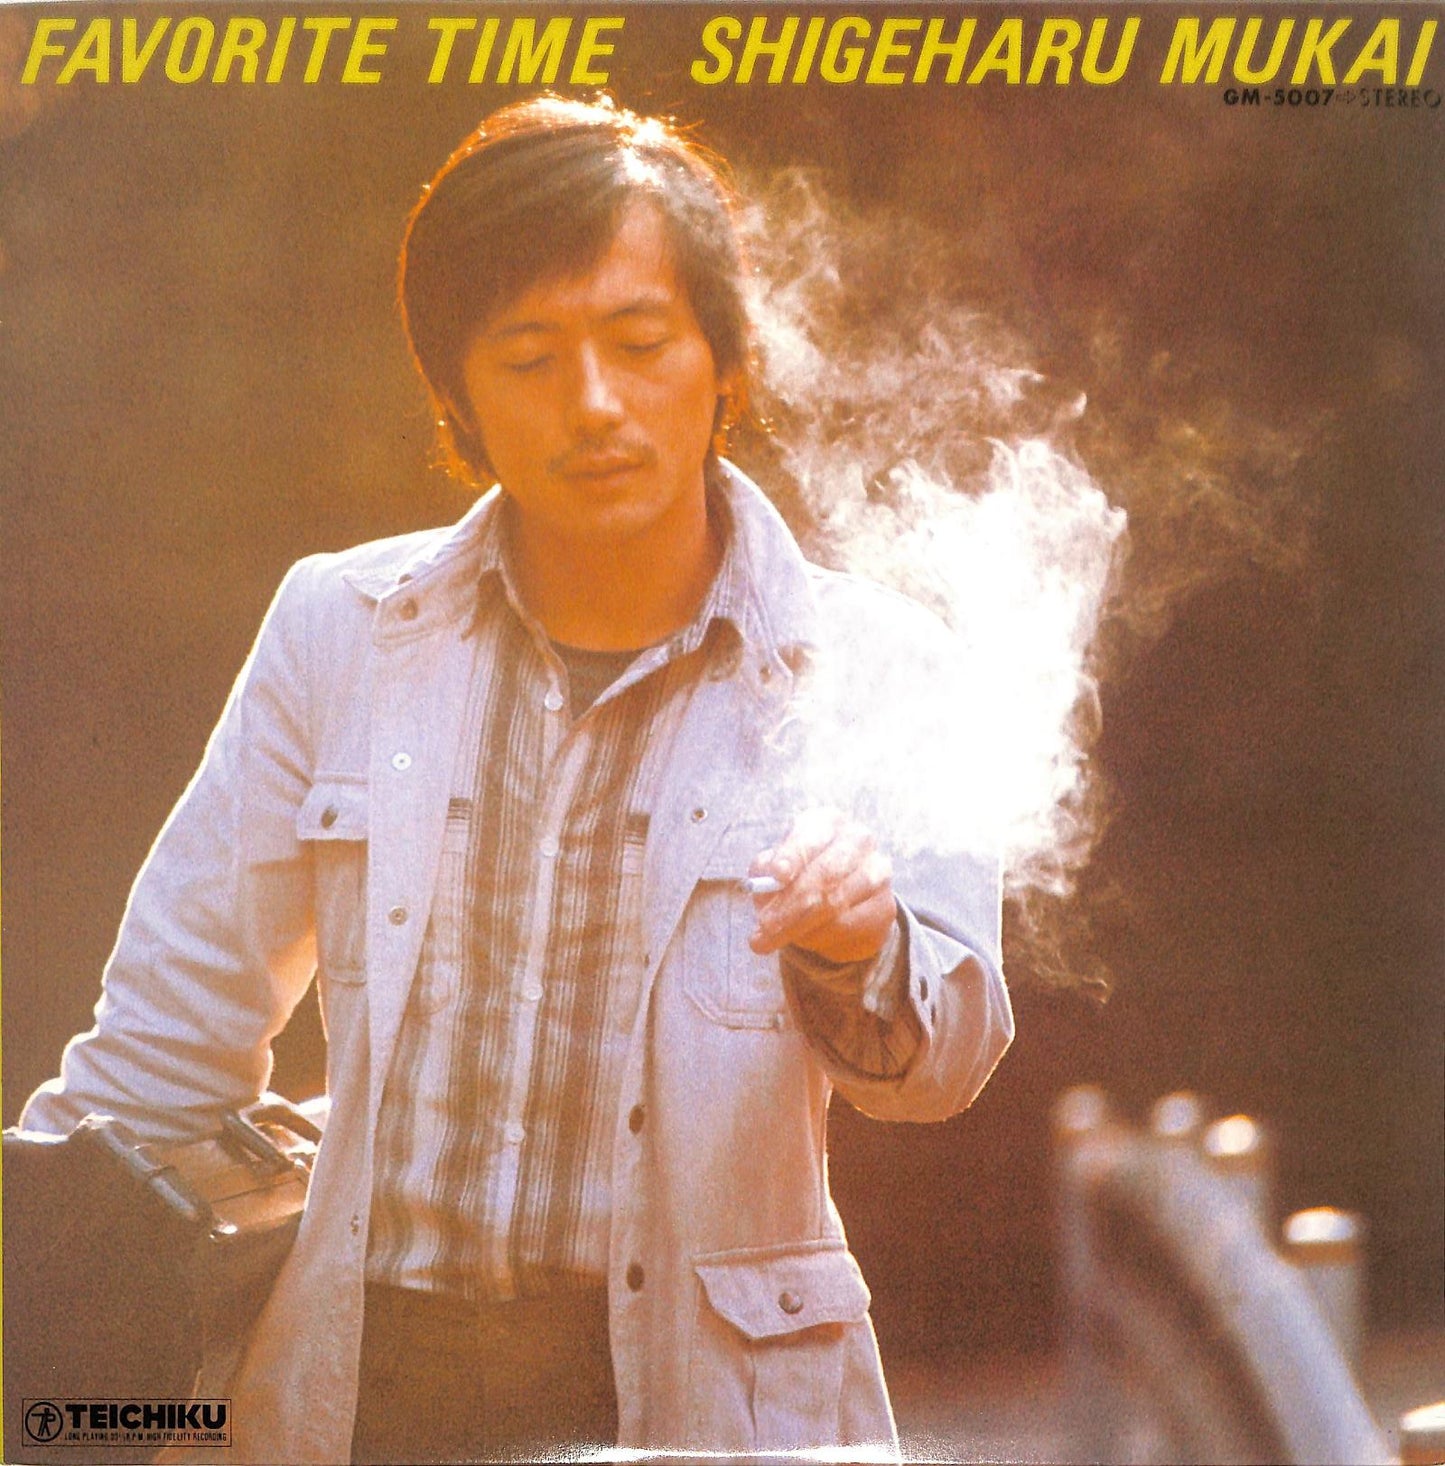 SHIGEHARU MUKAI - Favorite Time